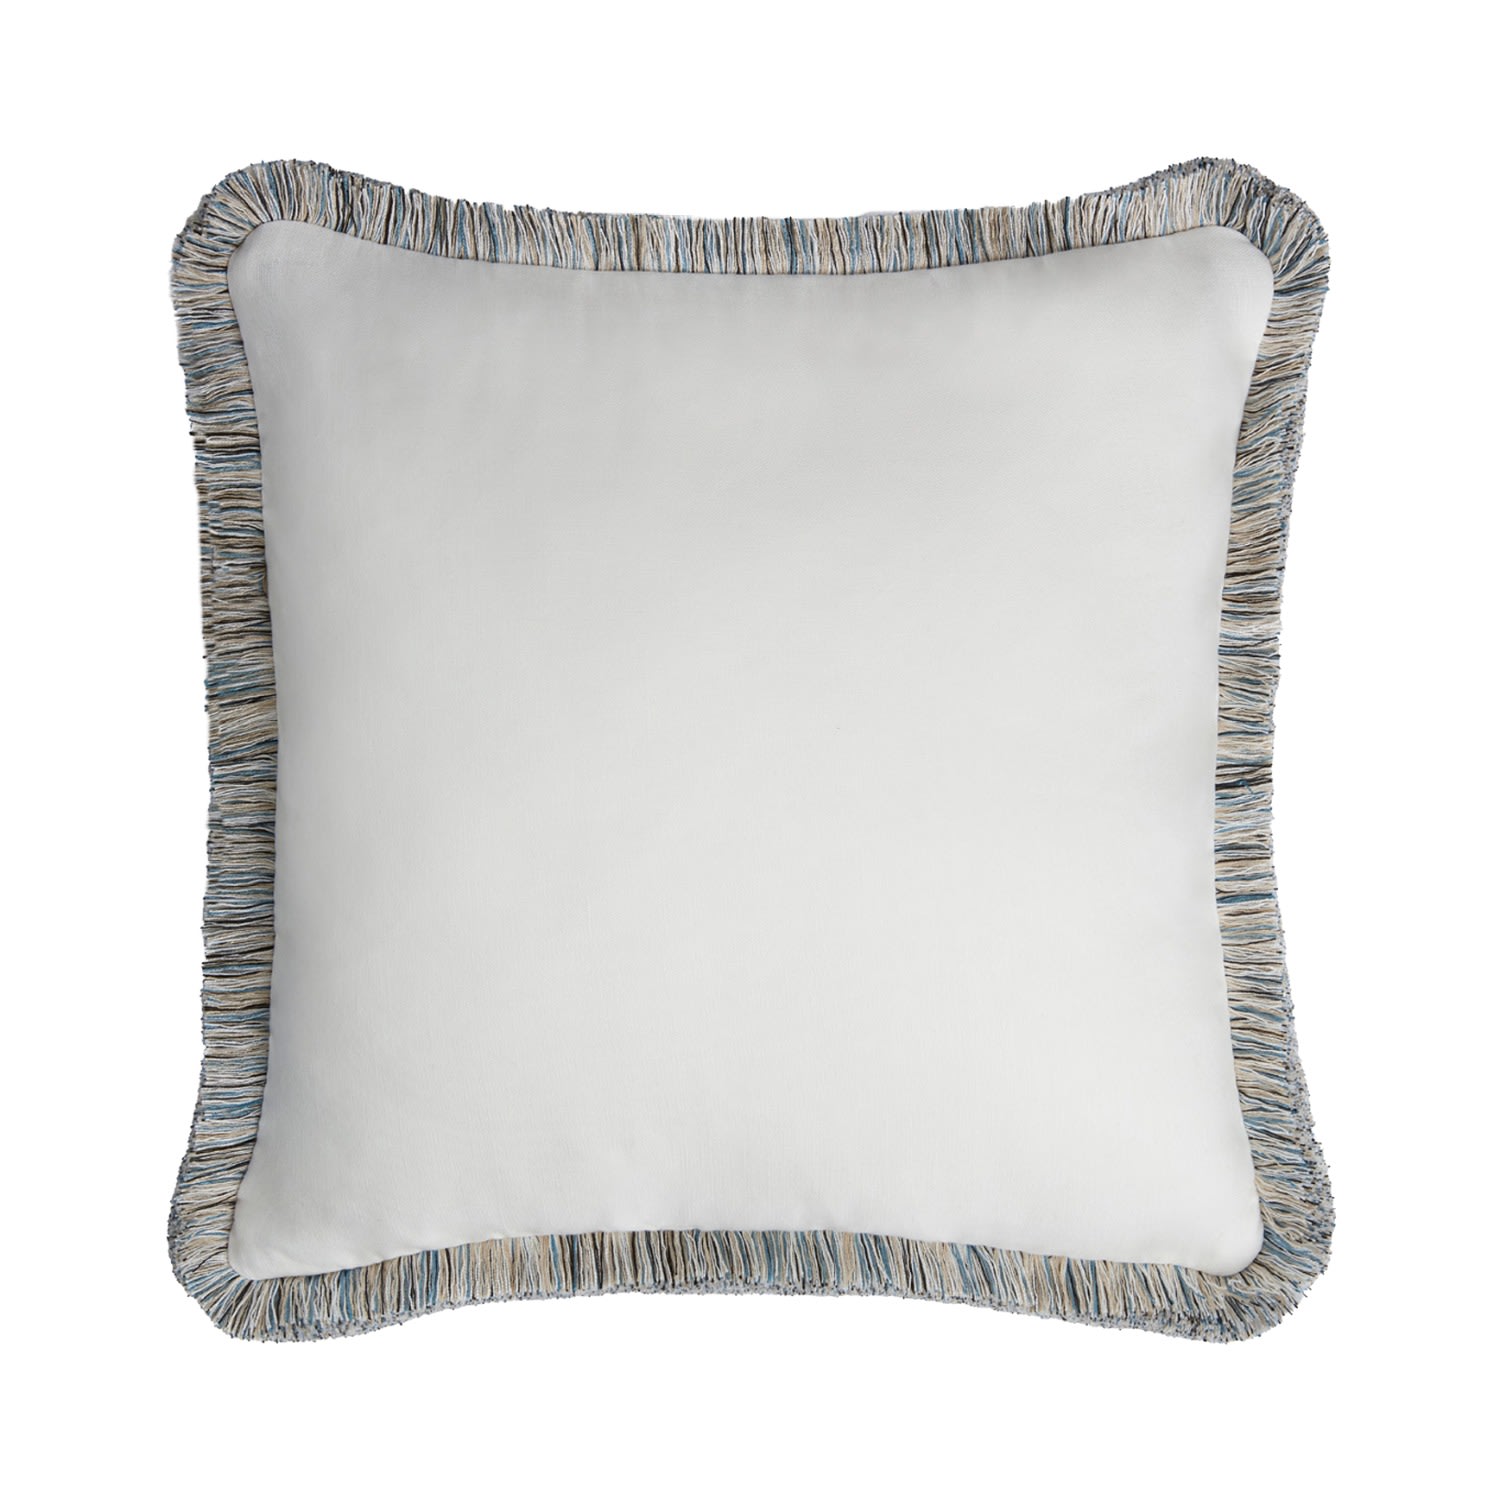 Capri Linen Pillow White With Multicolor Fringes Rectangular Medium Lo Decor